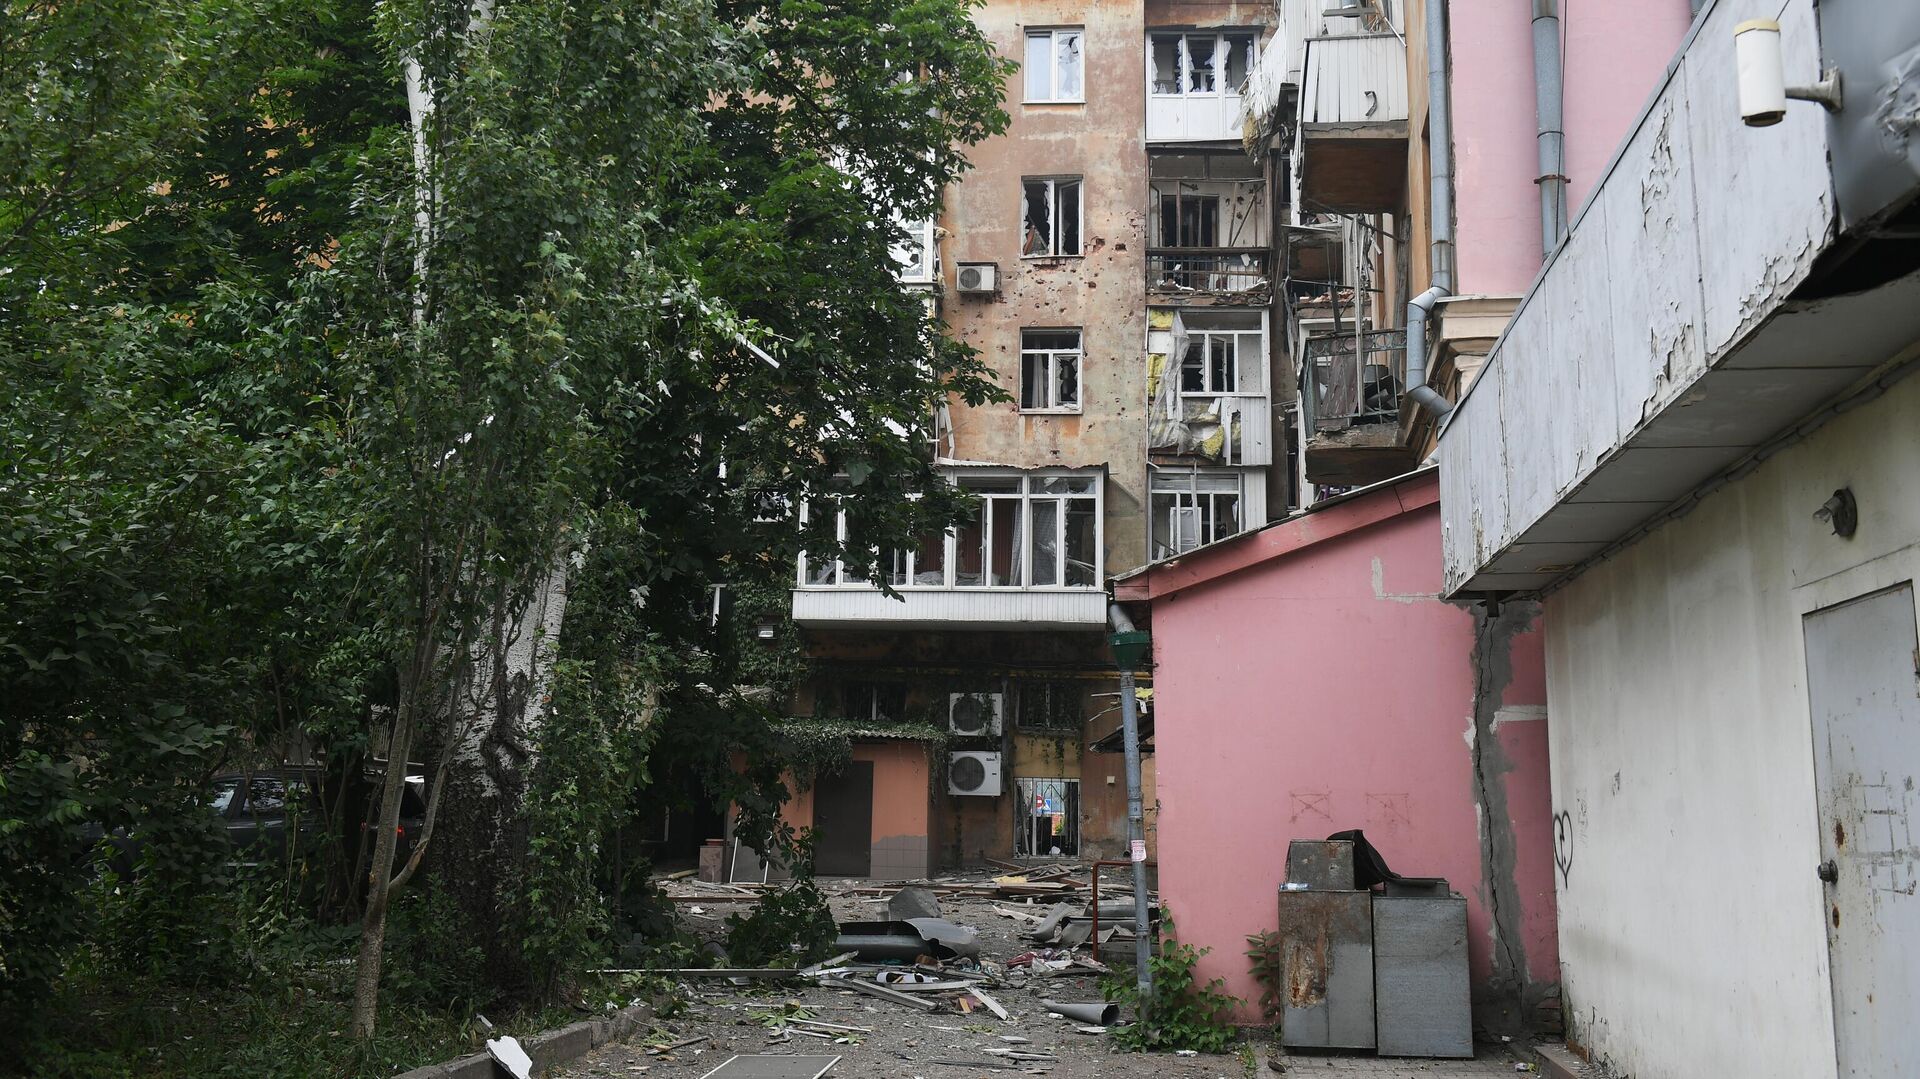 Жилой дом на Университетской улице в Ворошиловском районе Донецка, подвергшийся обстрелу - РИА Новости, 1920, 27.07.2022